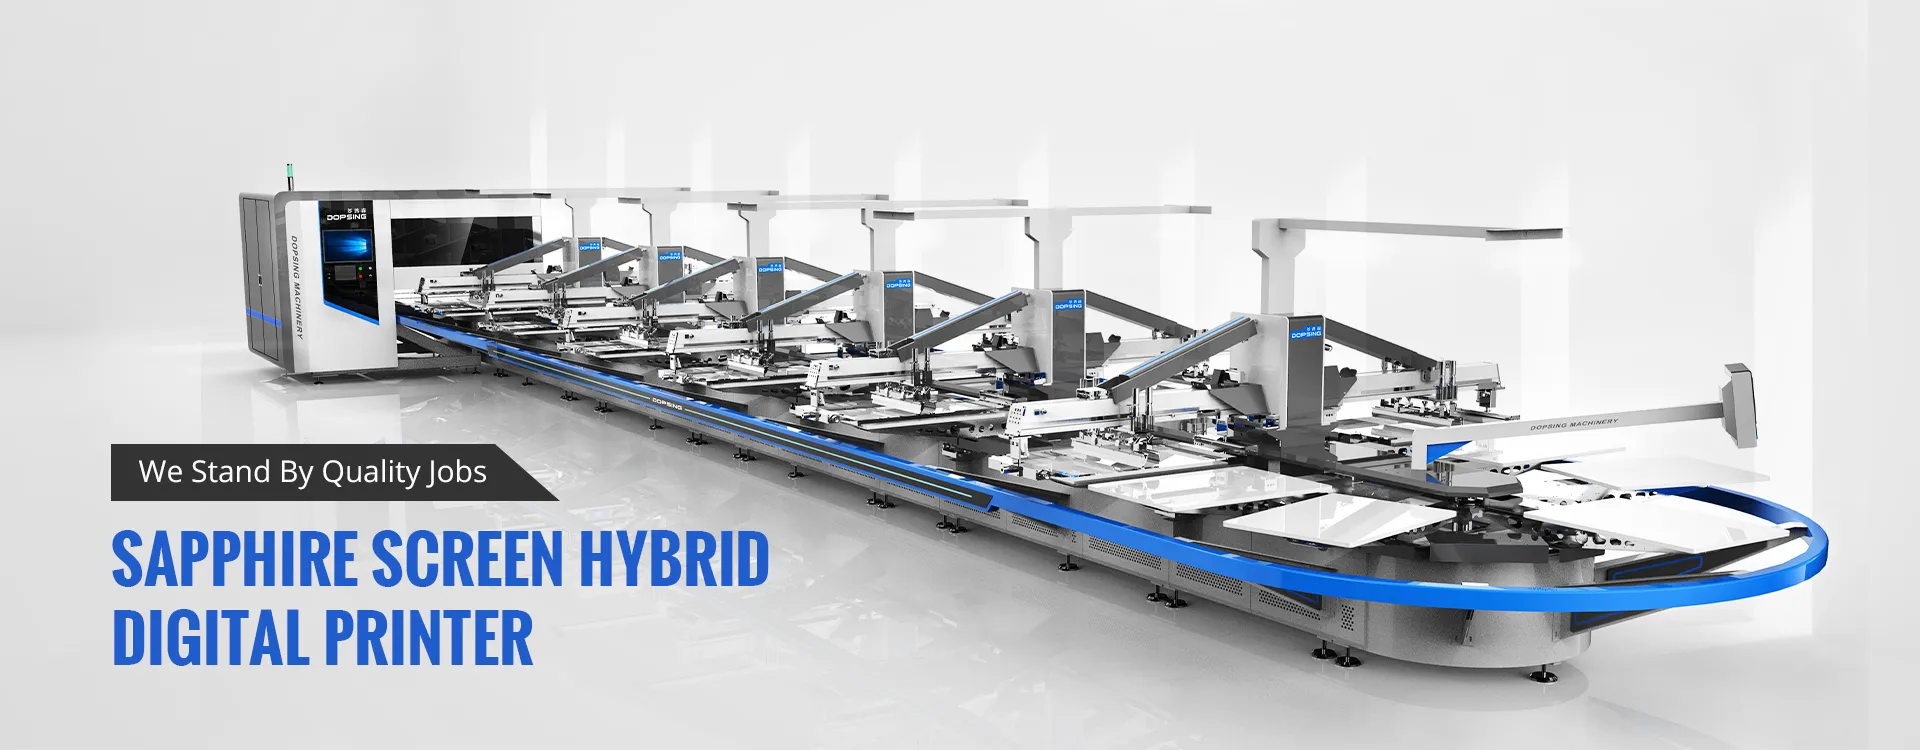 Imprimante numérique hybride à écran saphir